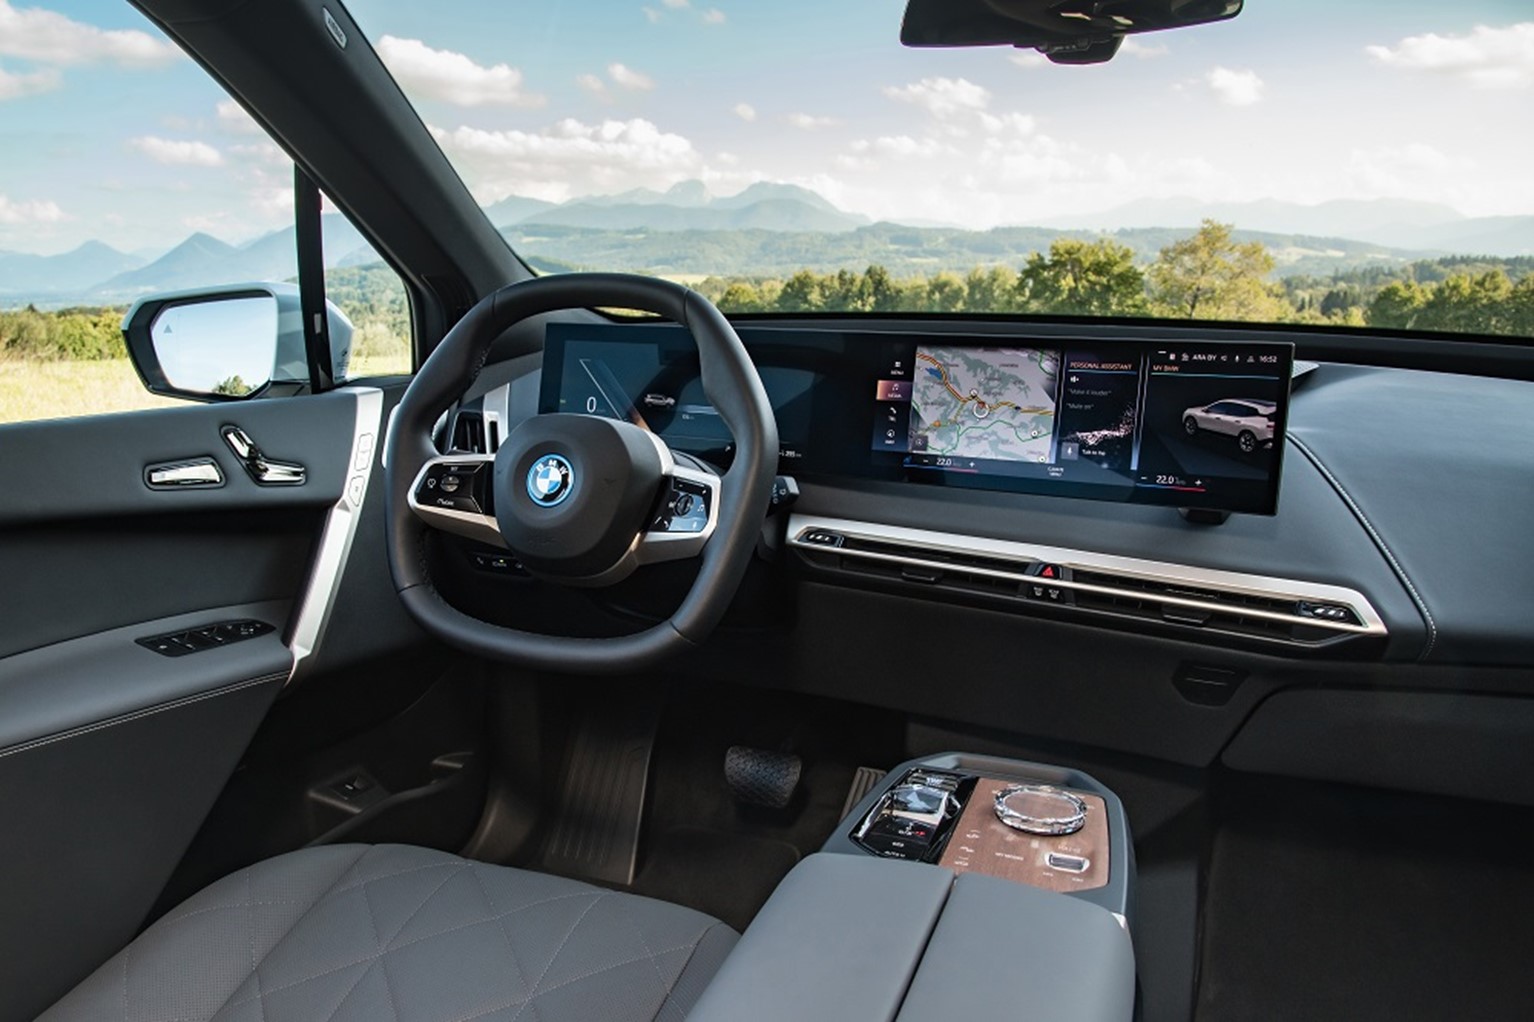 BMW lança carro inteligente em live na Twitch e abre nova era da mobilidade  no Brasil